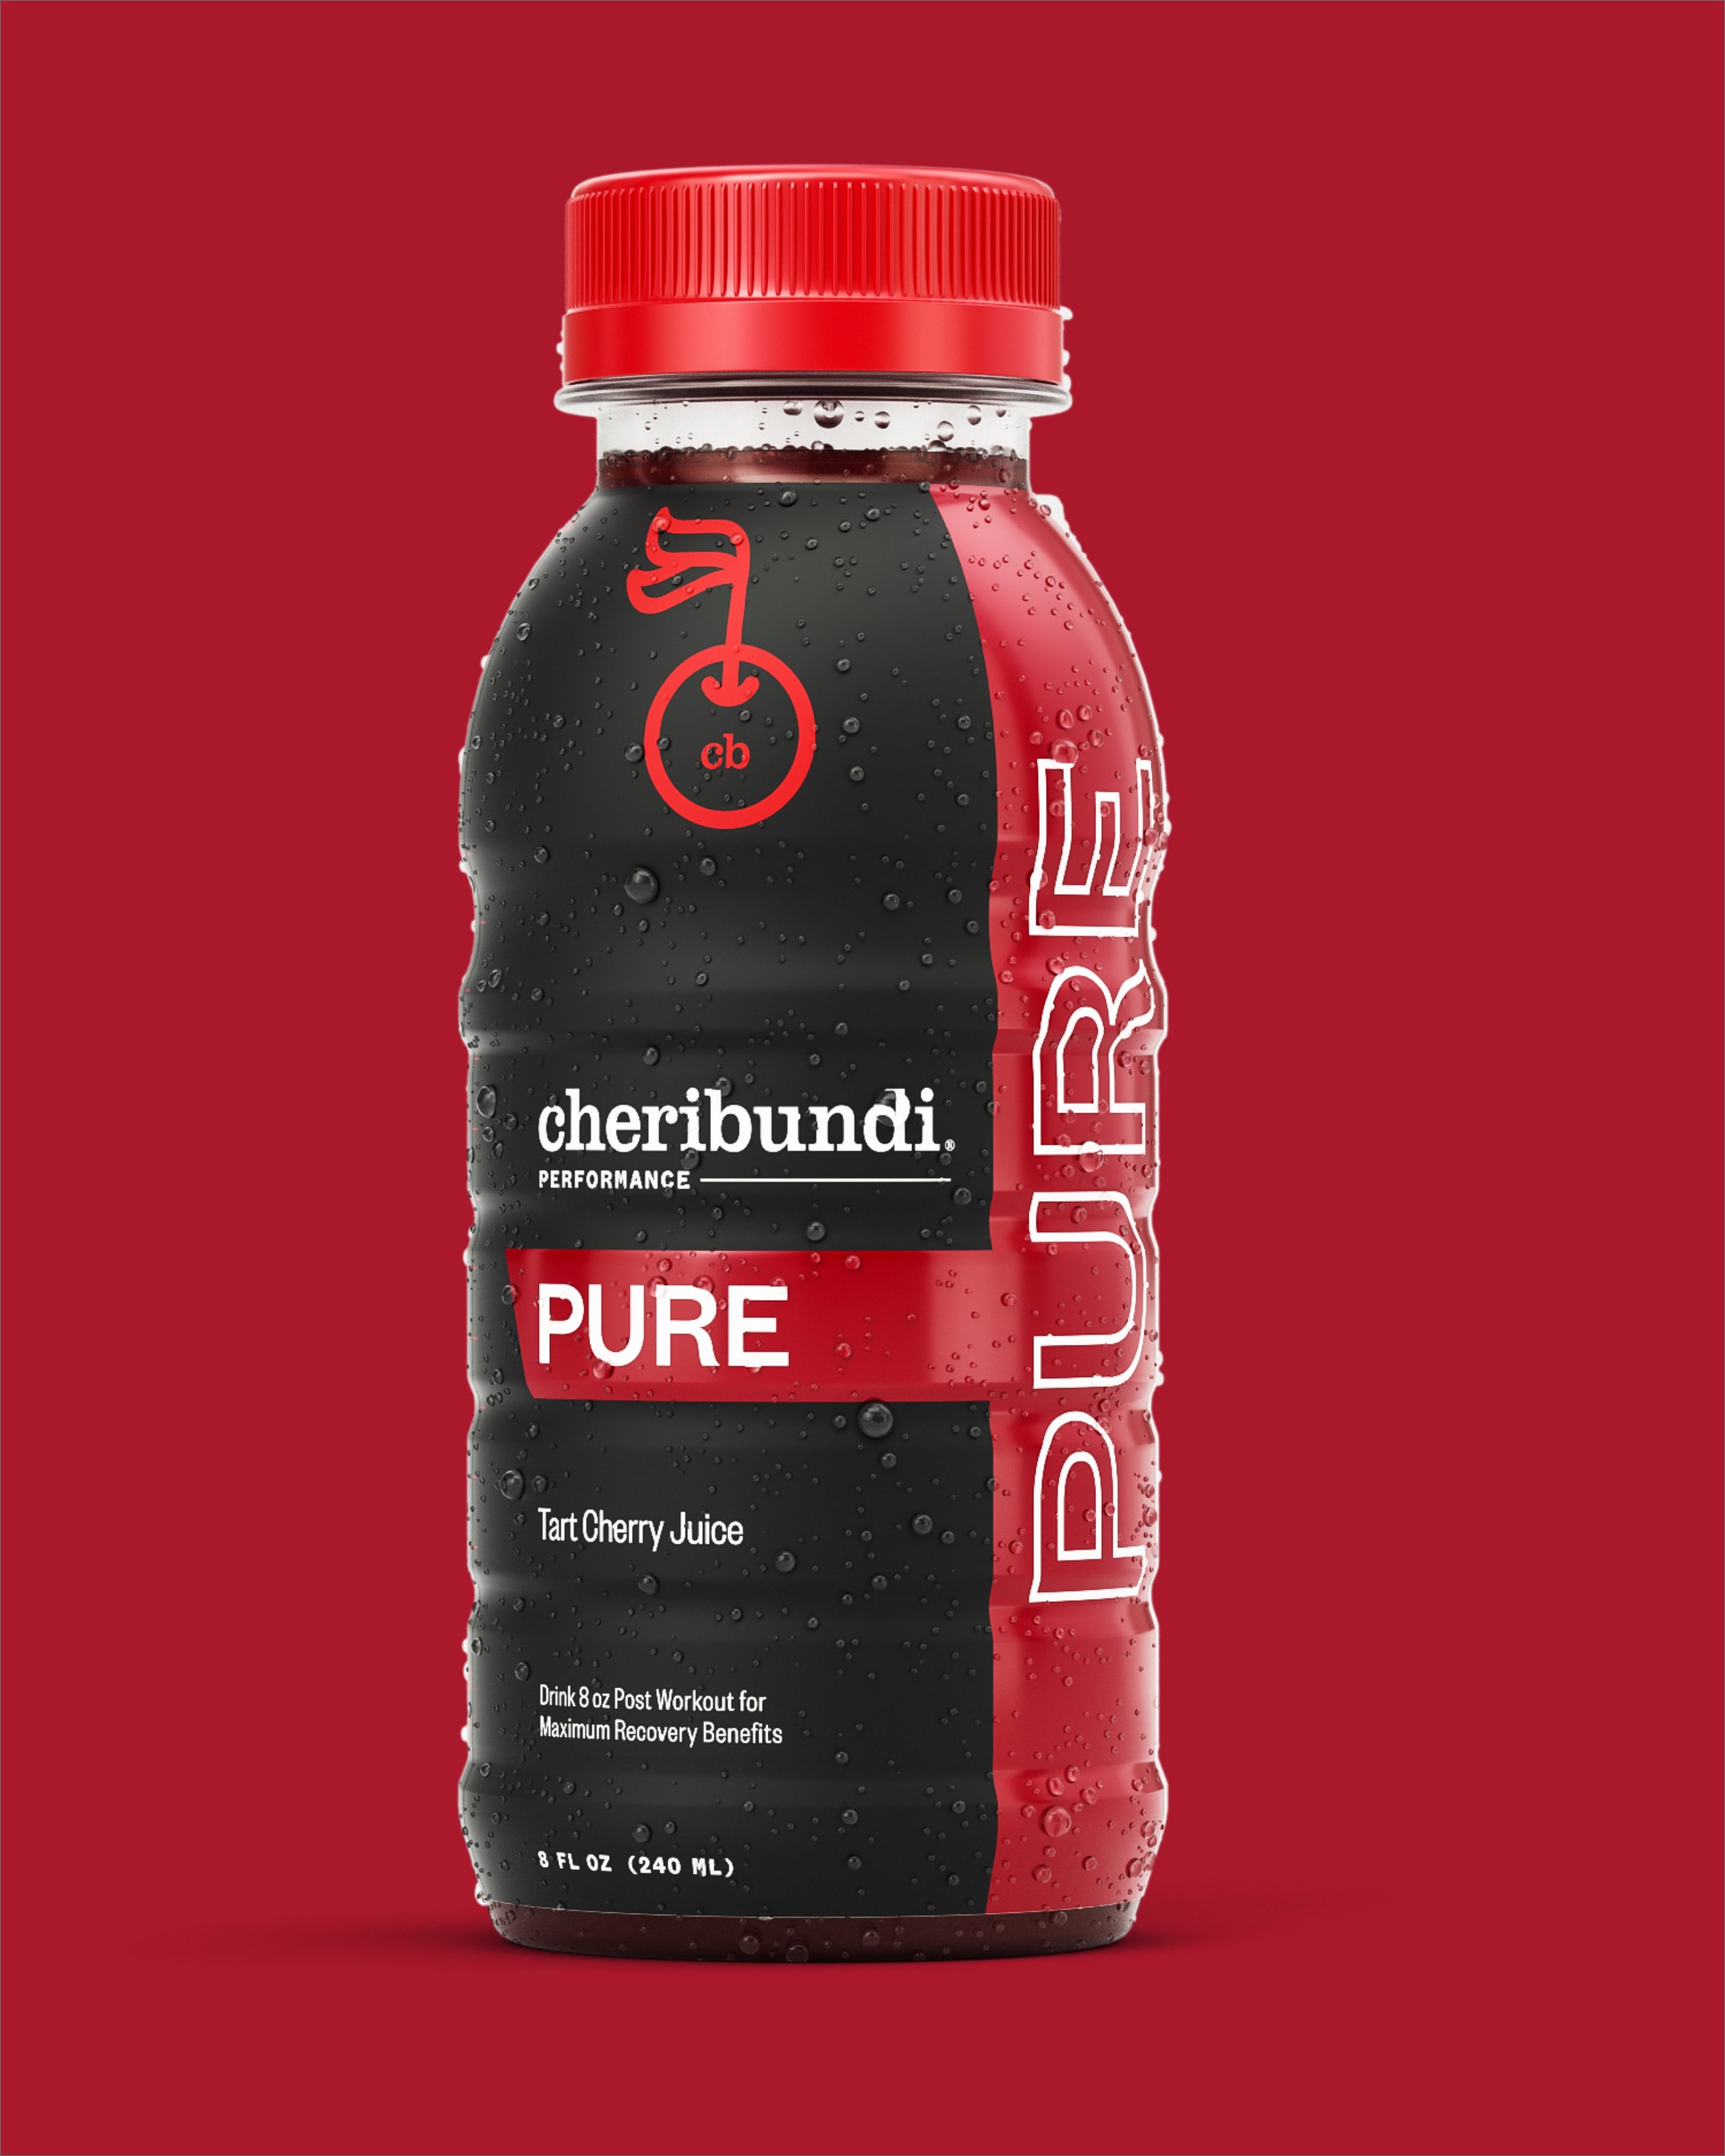 Pure front packaging. Cheribundi pure. Cheribundi 100 tart cherry juice.